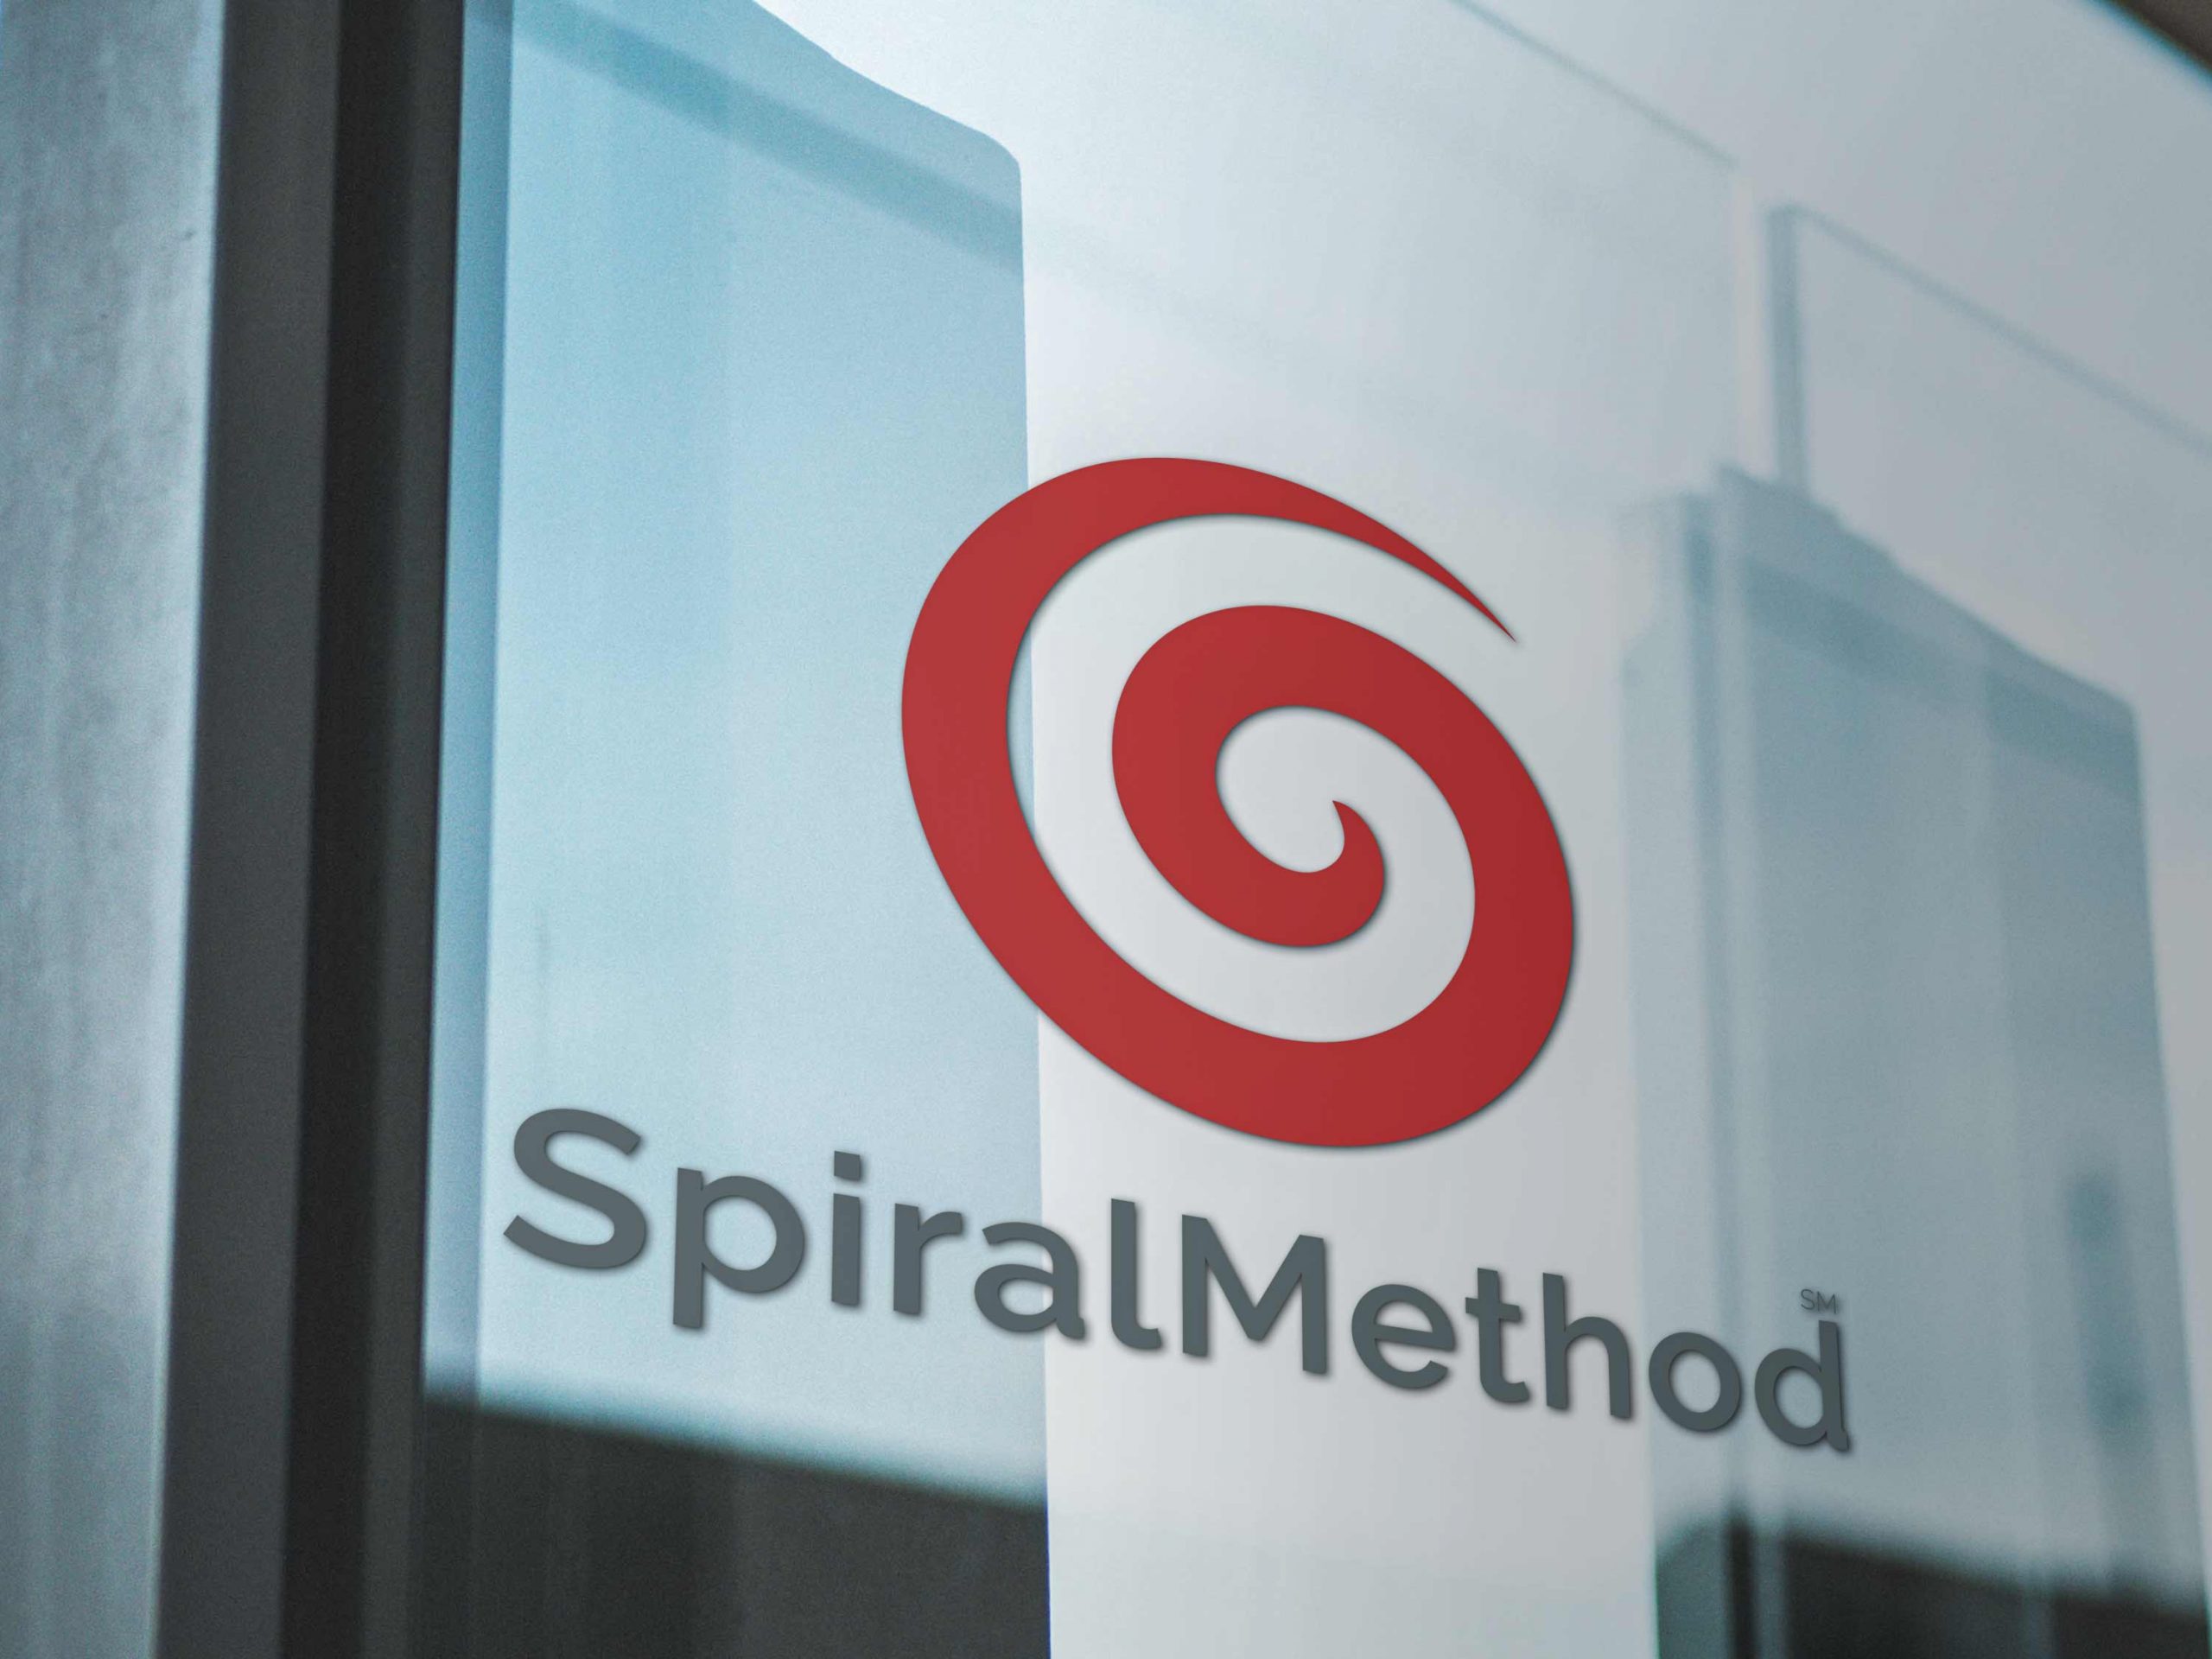 SpiralMethod Logo